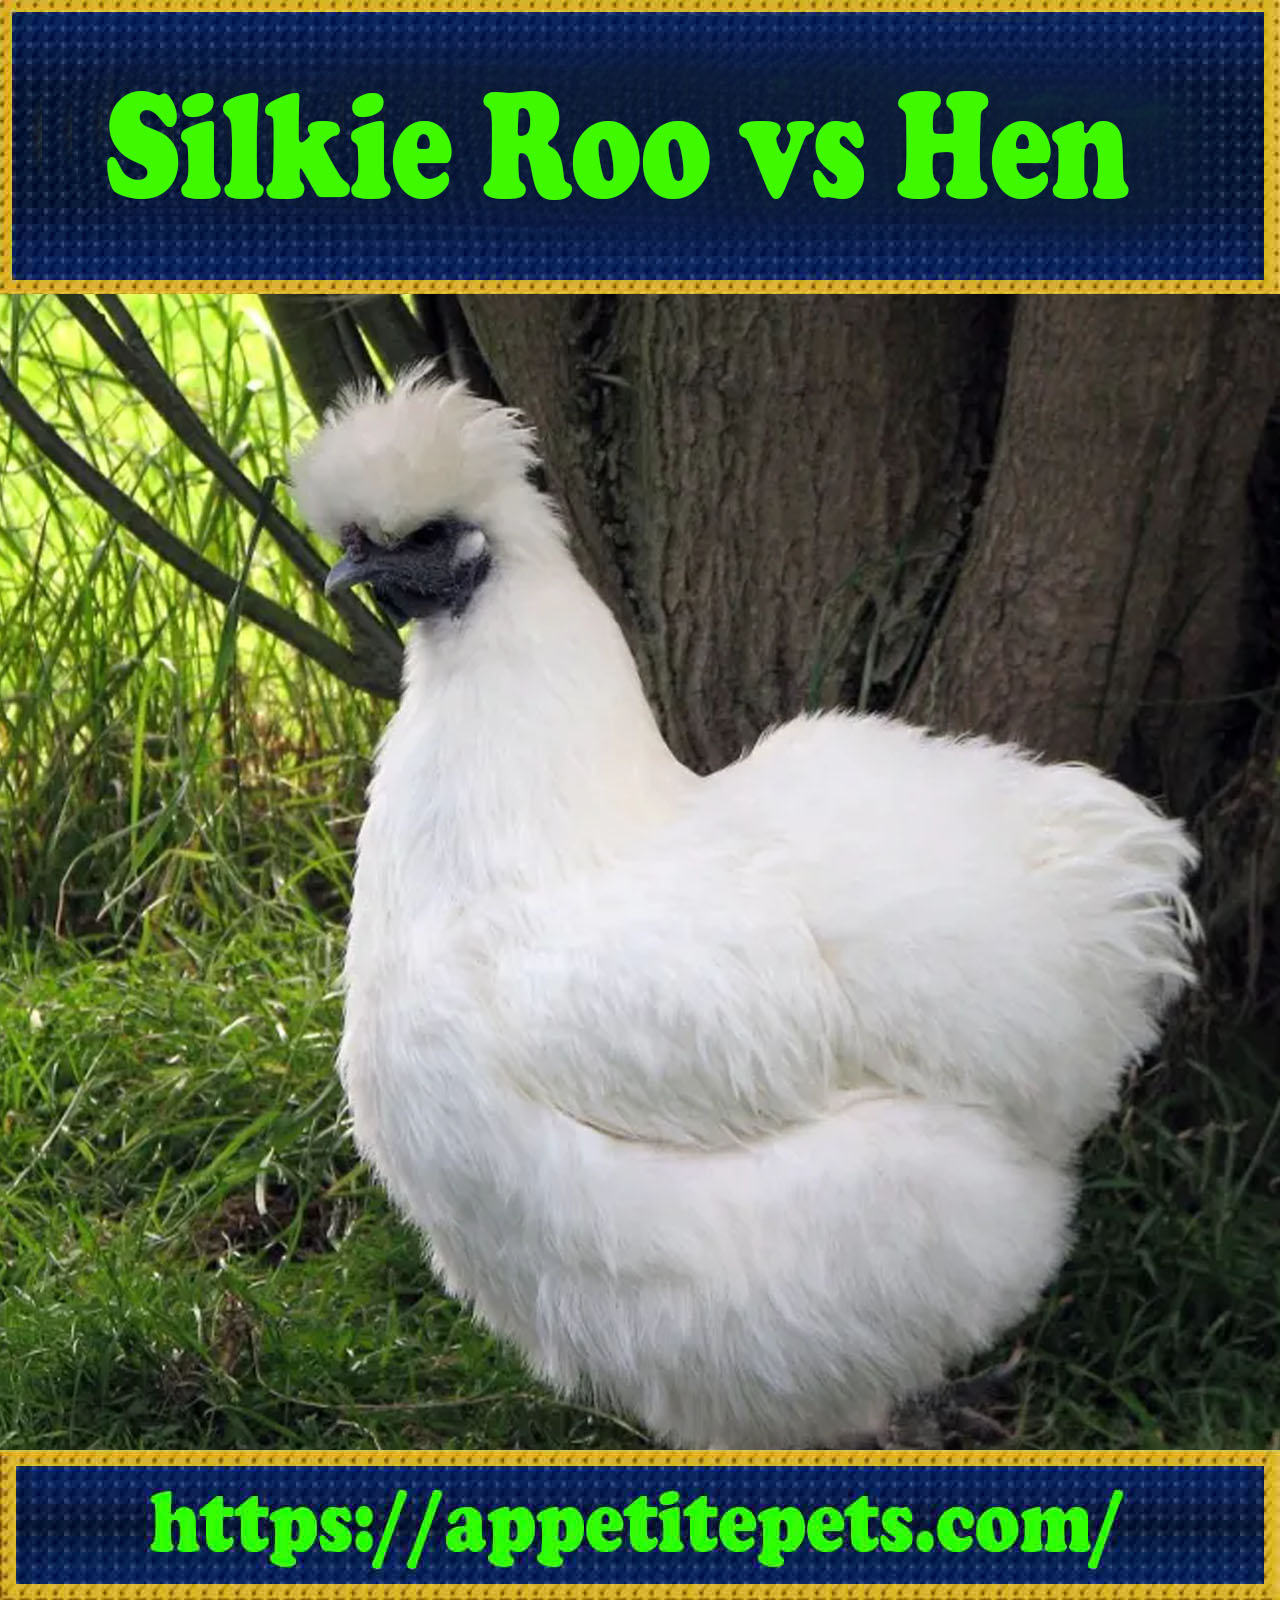 Silkie Roo vs Hen